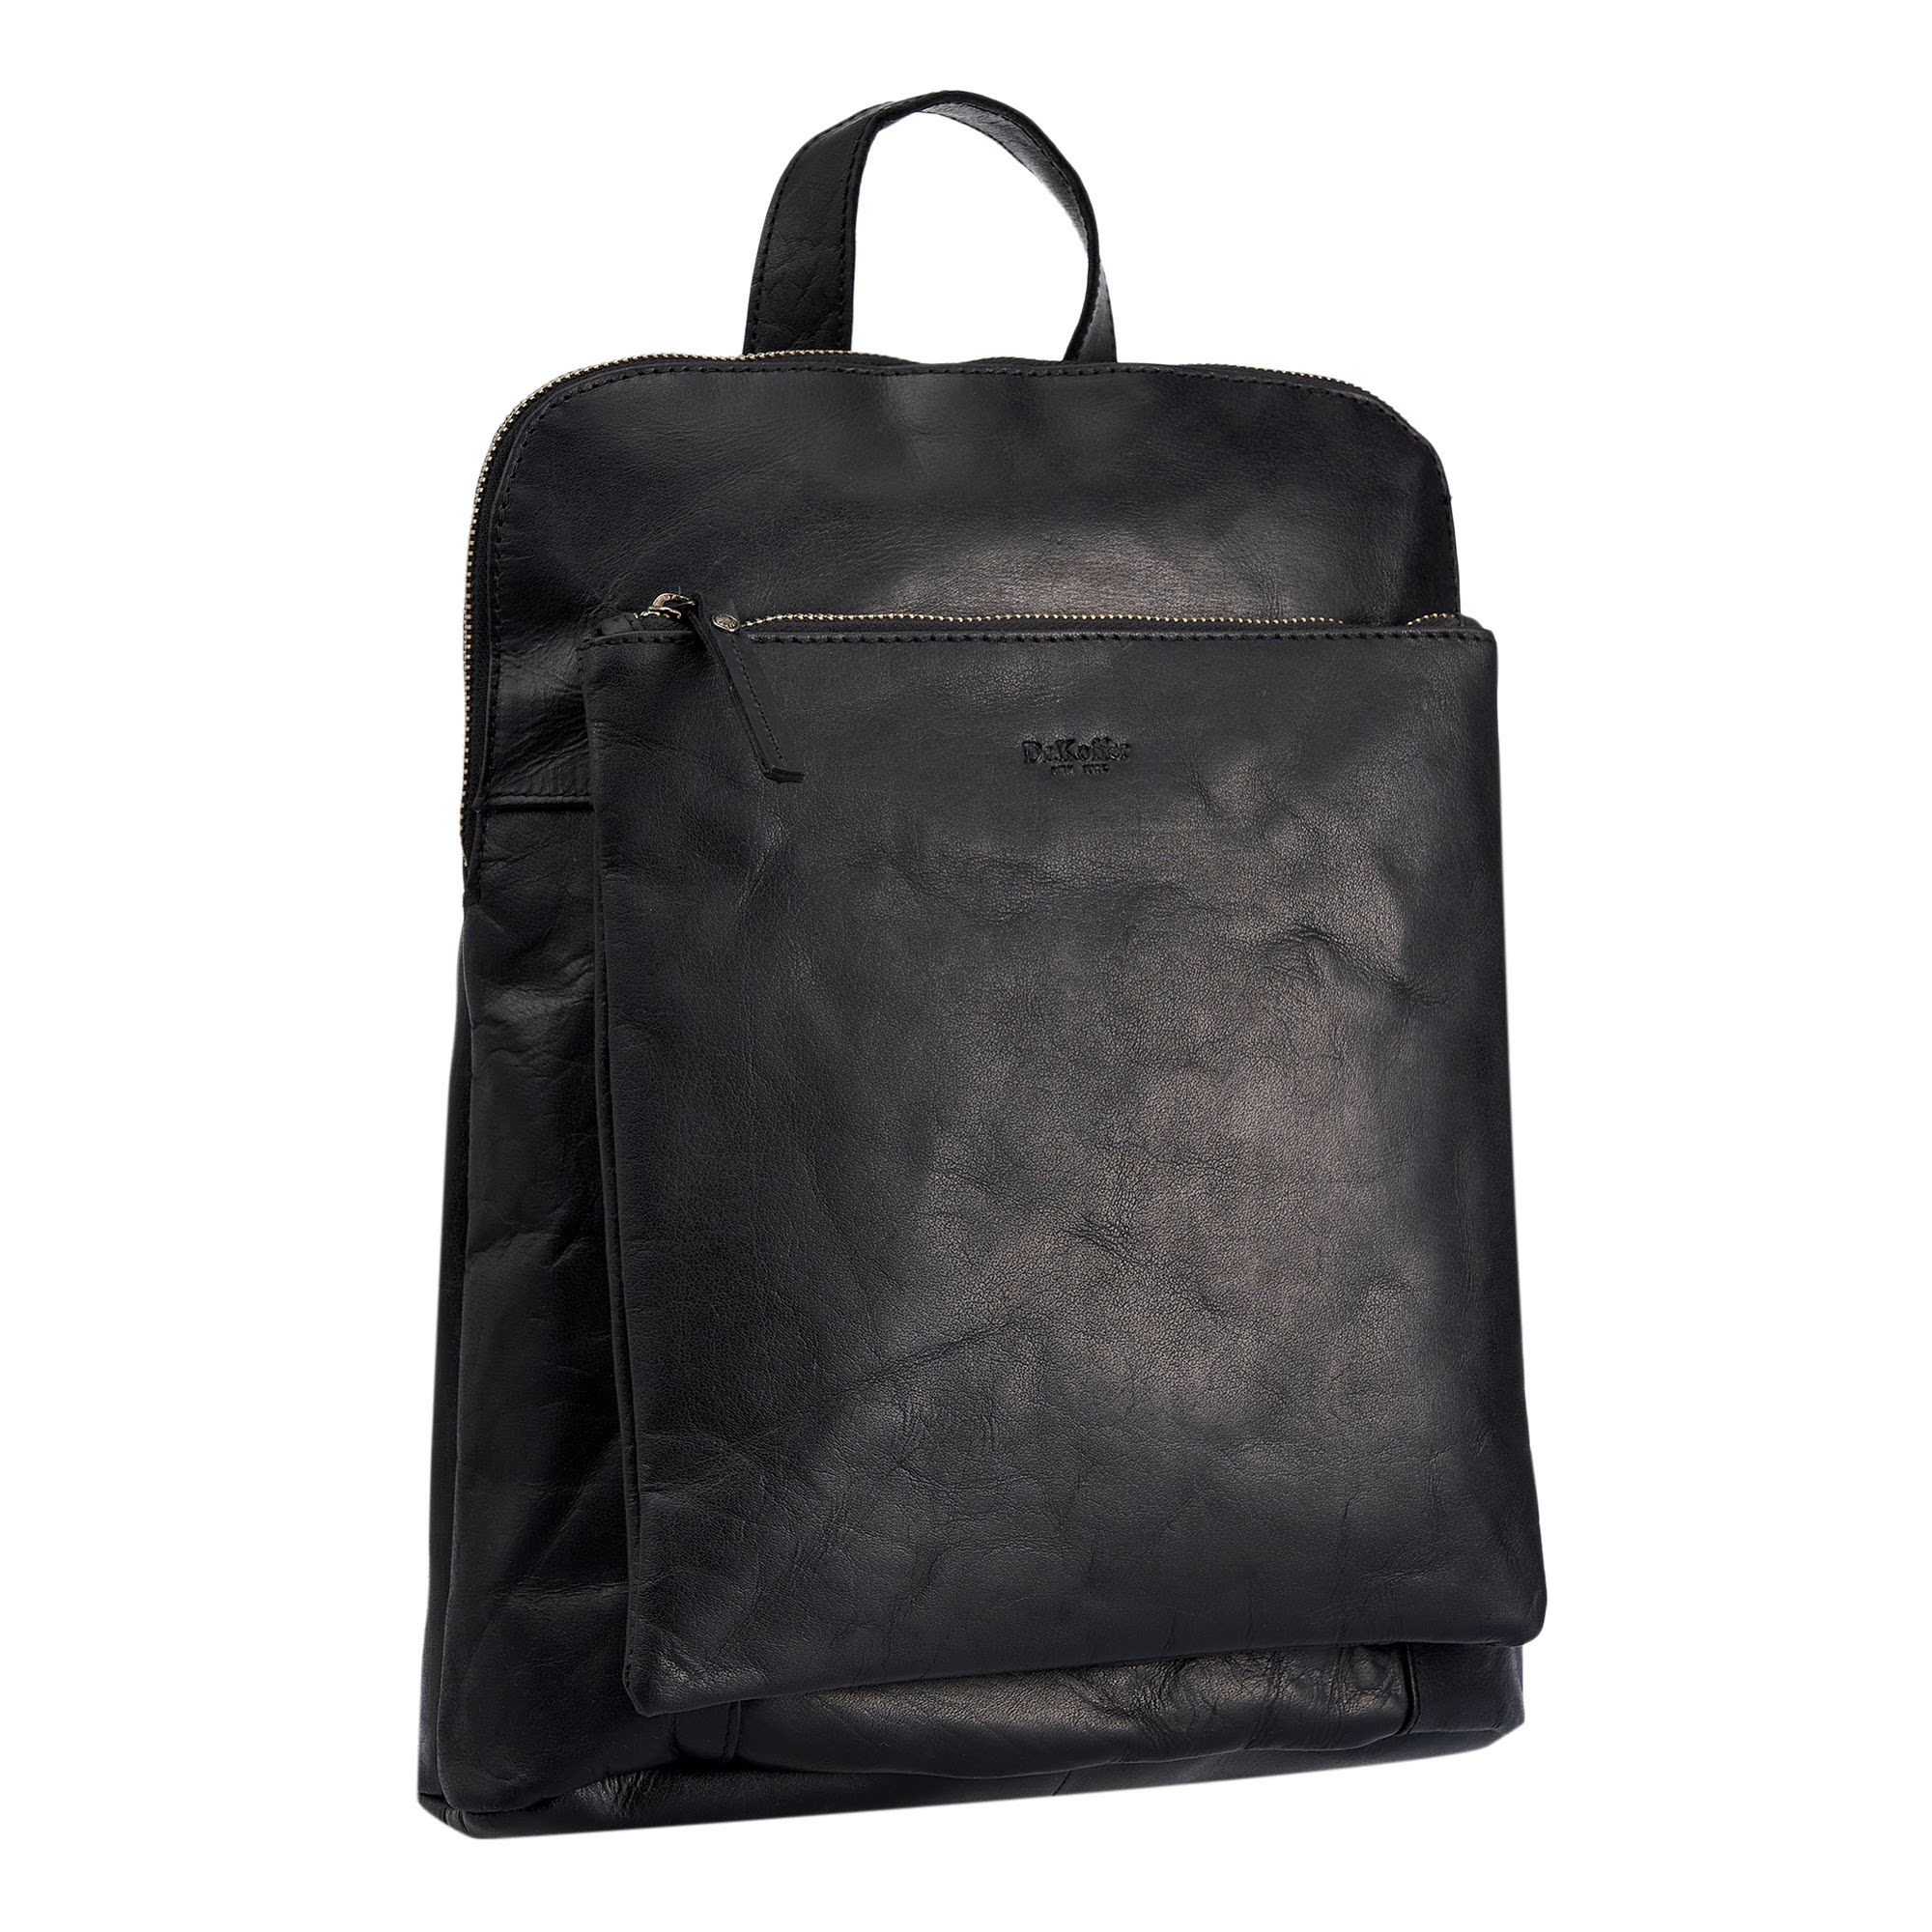 Др.Коффер B402830-111-04 рюкзак, цвет черный